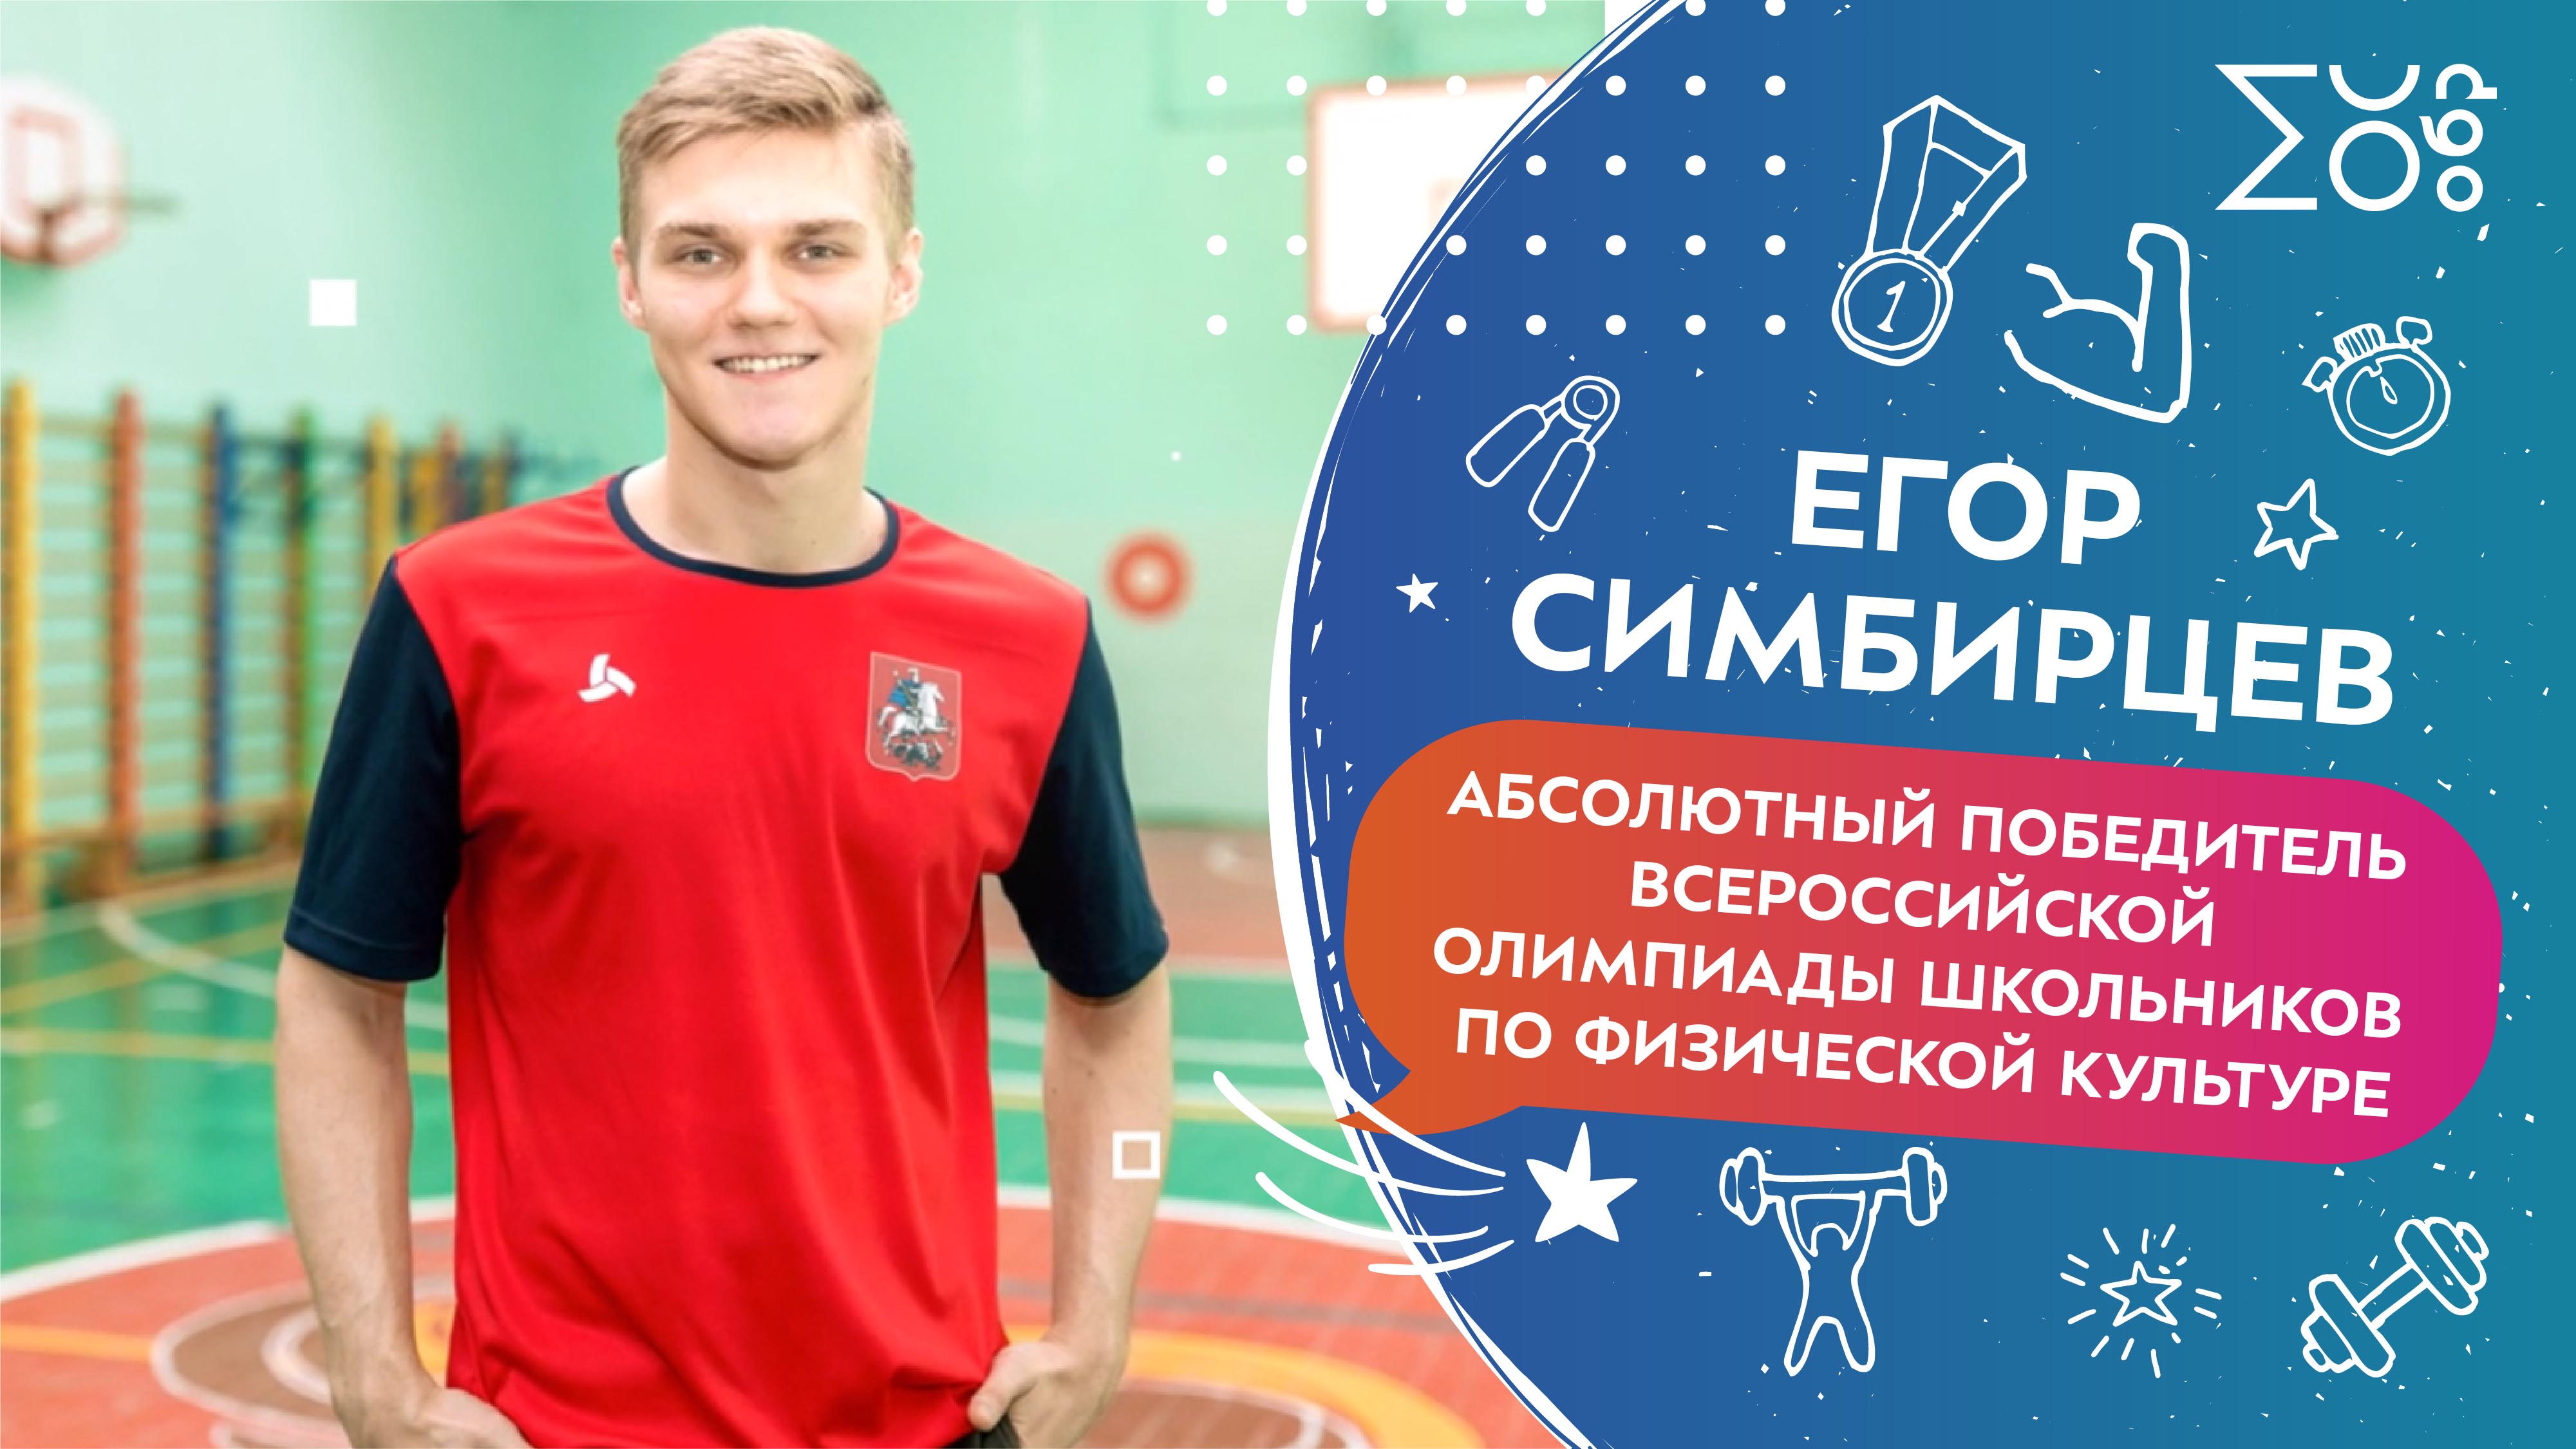 Егор Симбирцев, абсолютный победитель Всероссийской олимпиады школьников по физической культуре